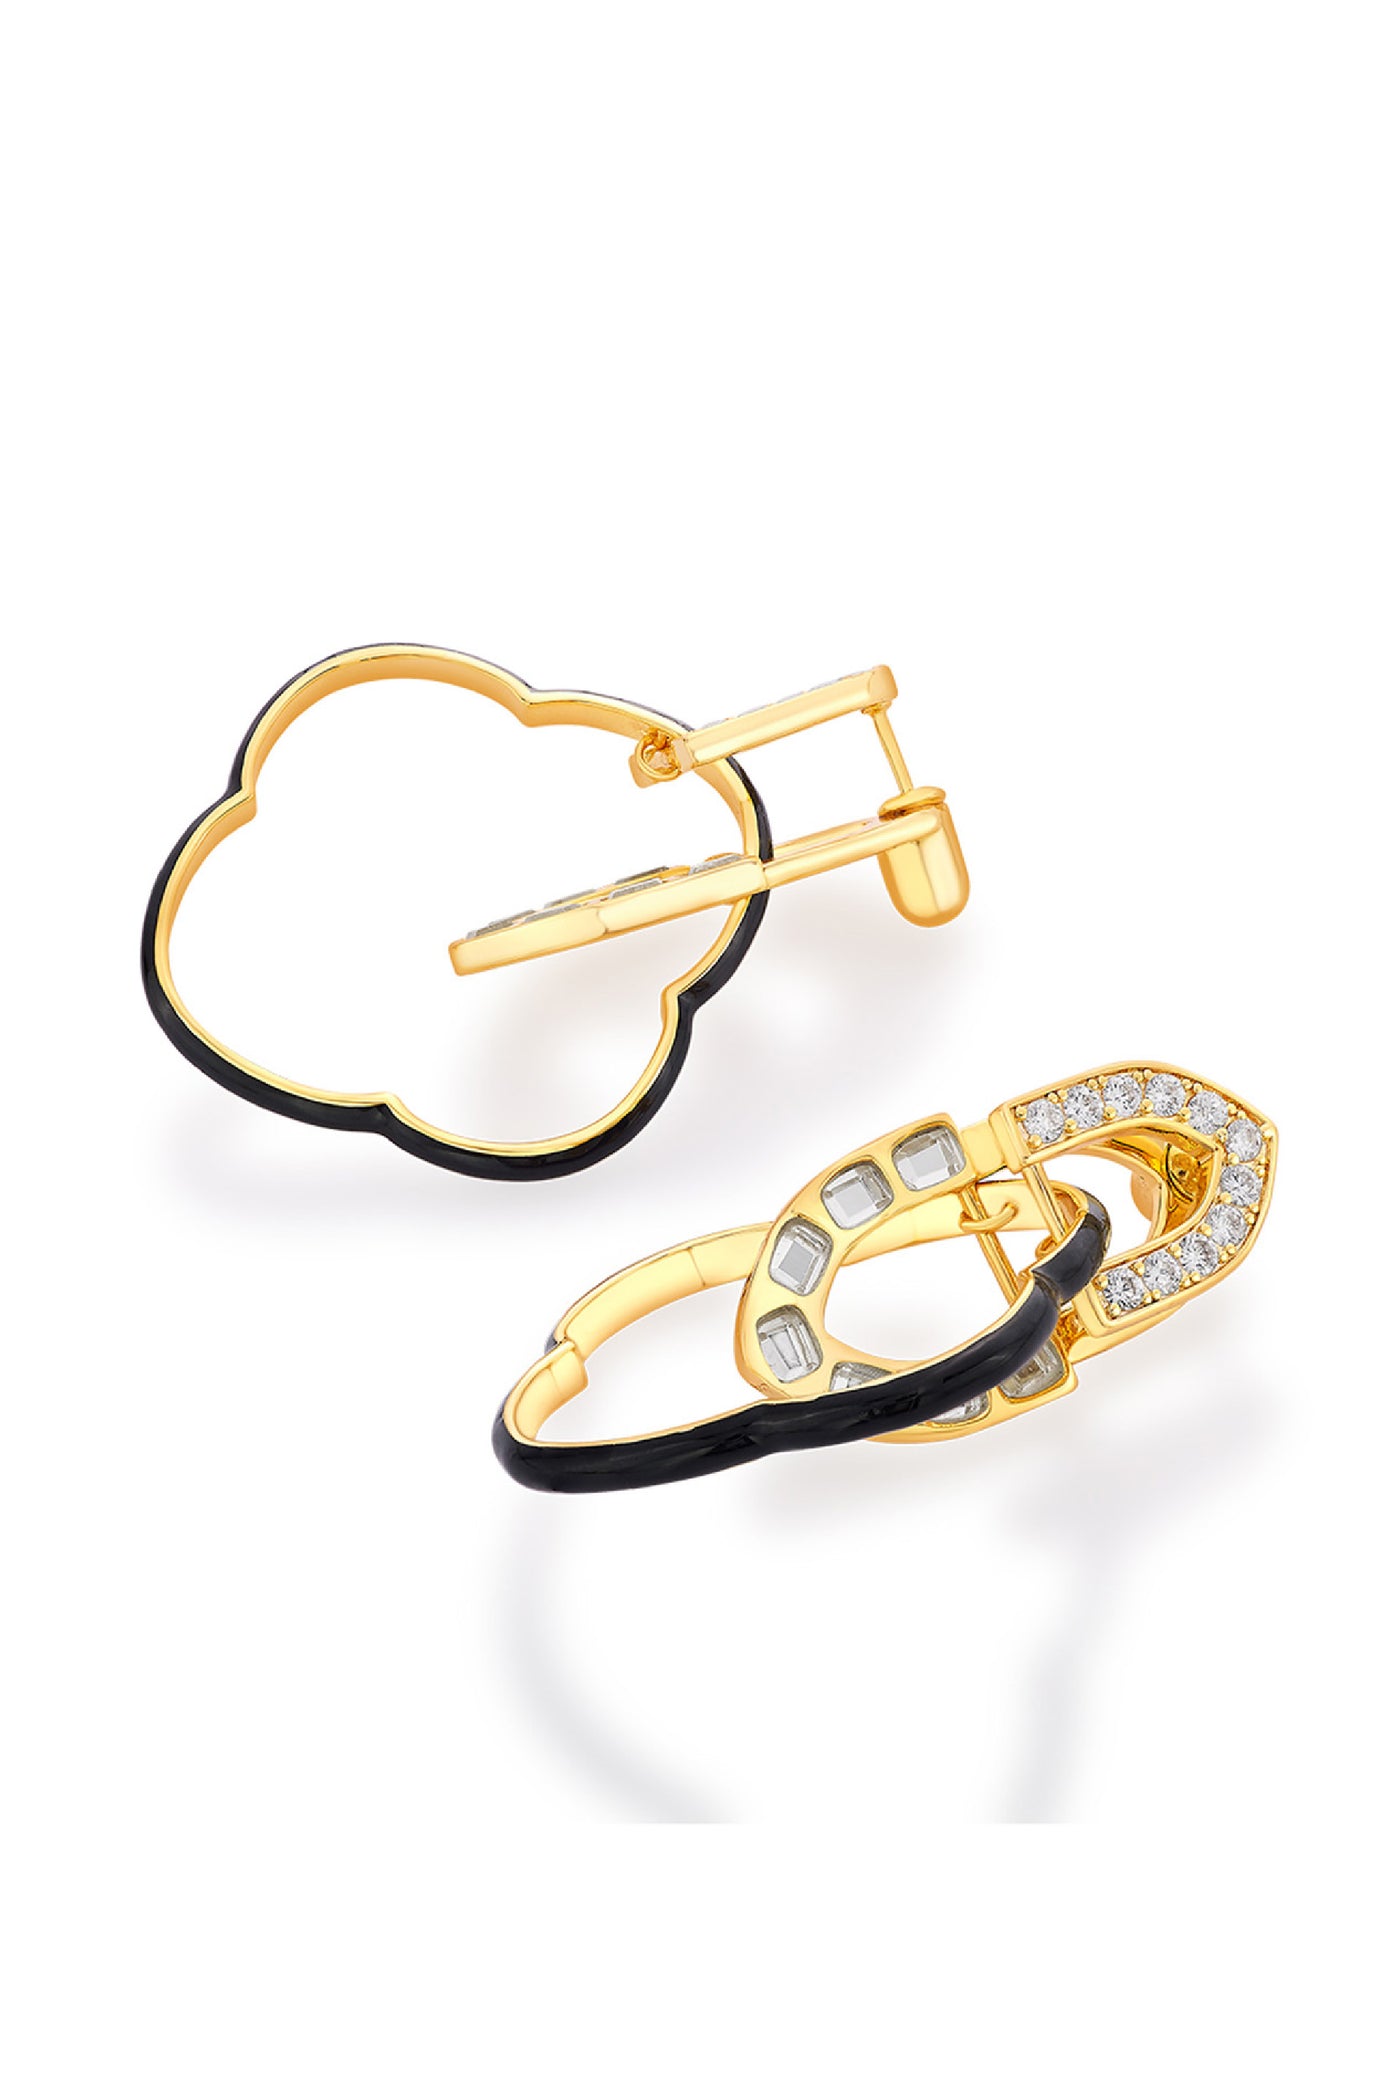 Isharya Sliving Arabesque Earrings In 18kt Gold Plated jewellery indian designer wear online shopping melange singapore